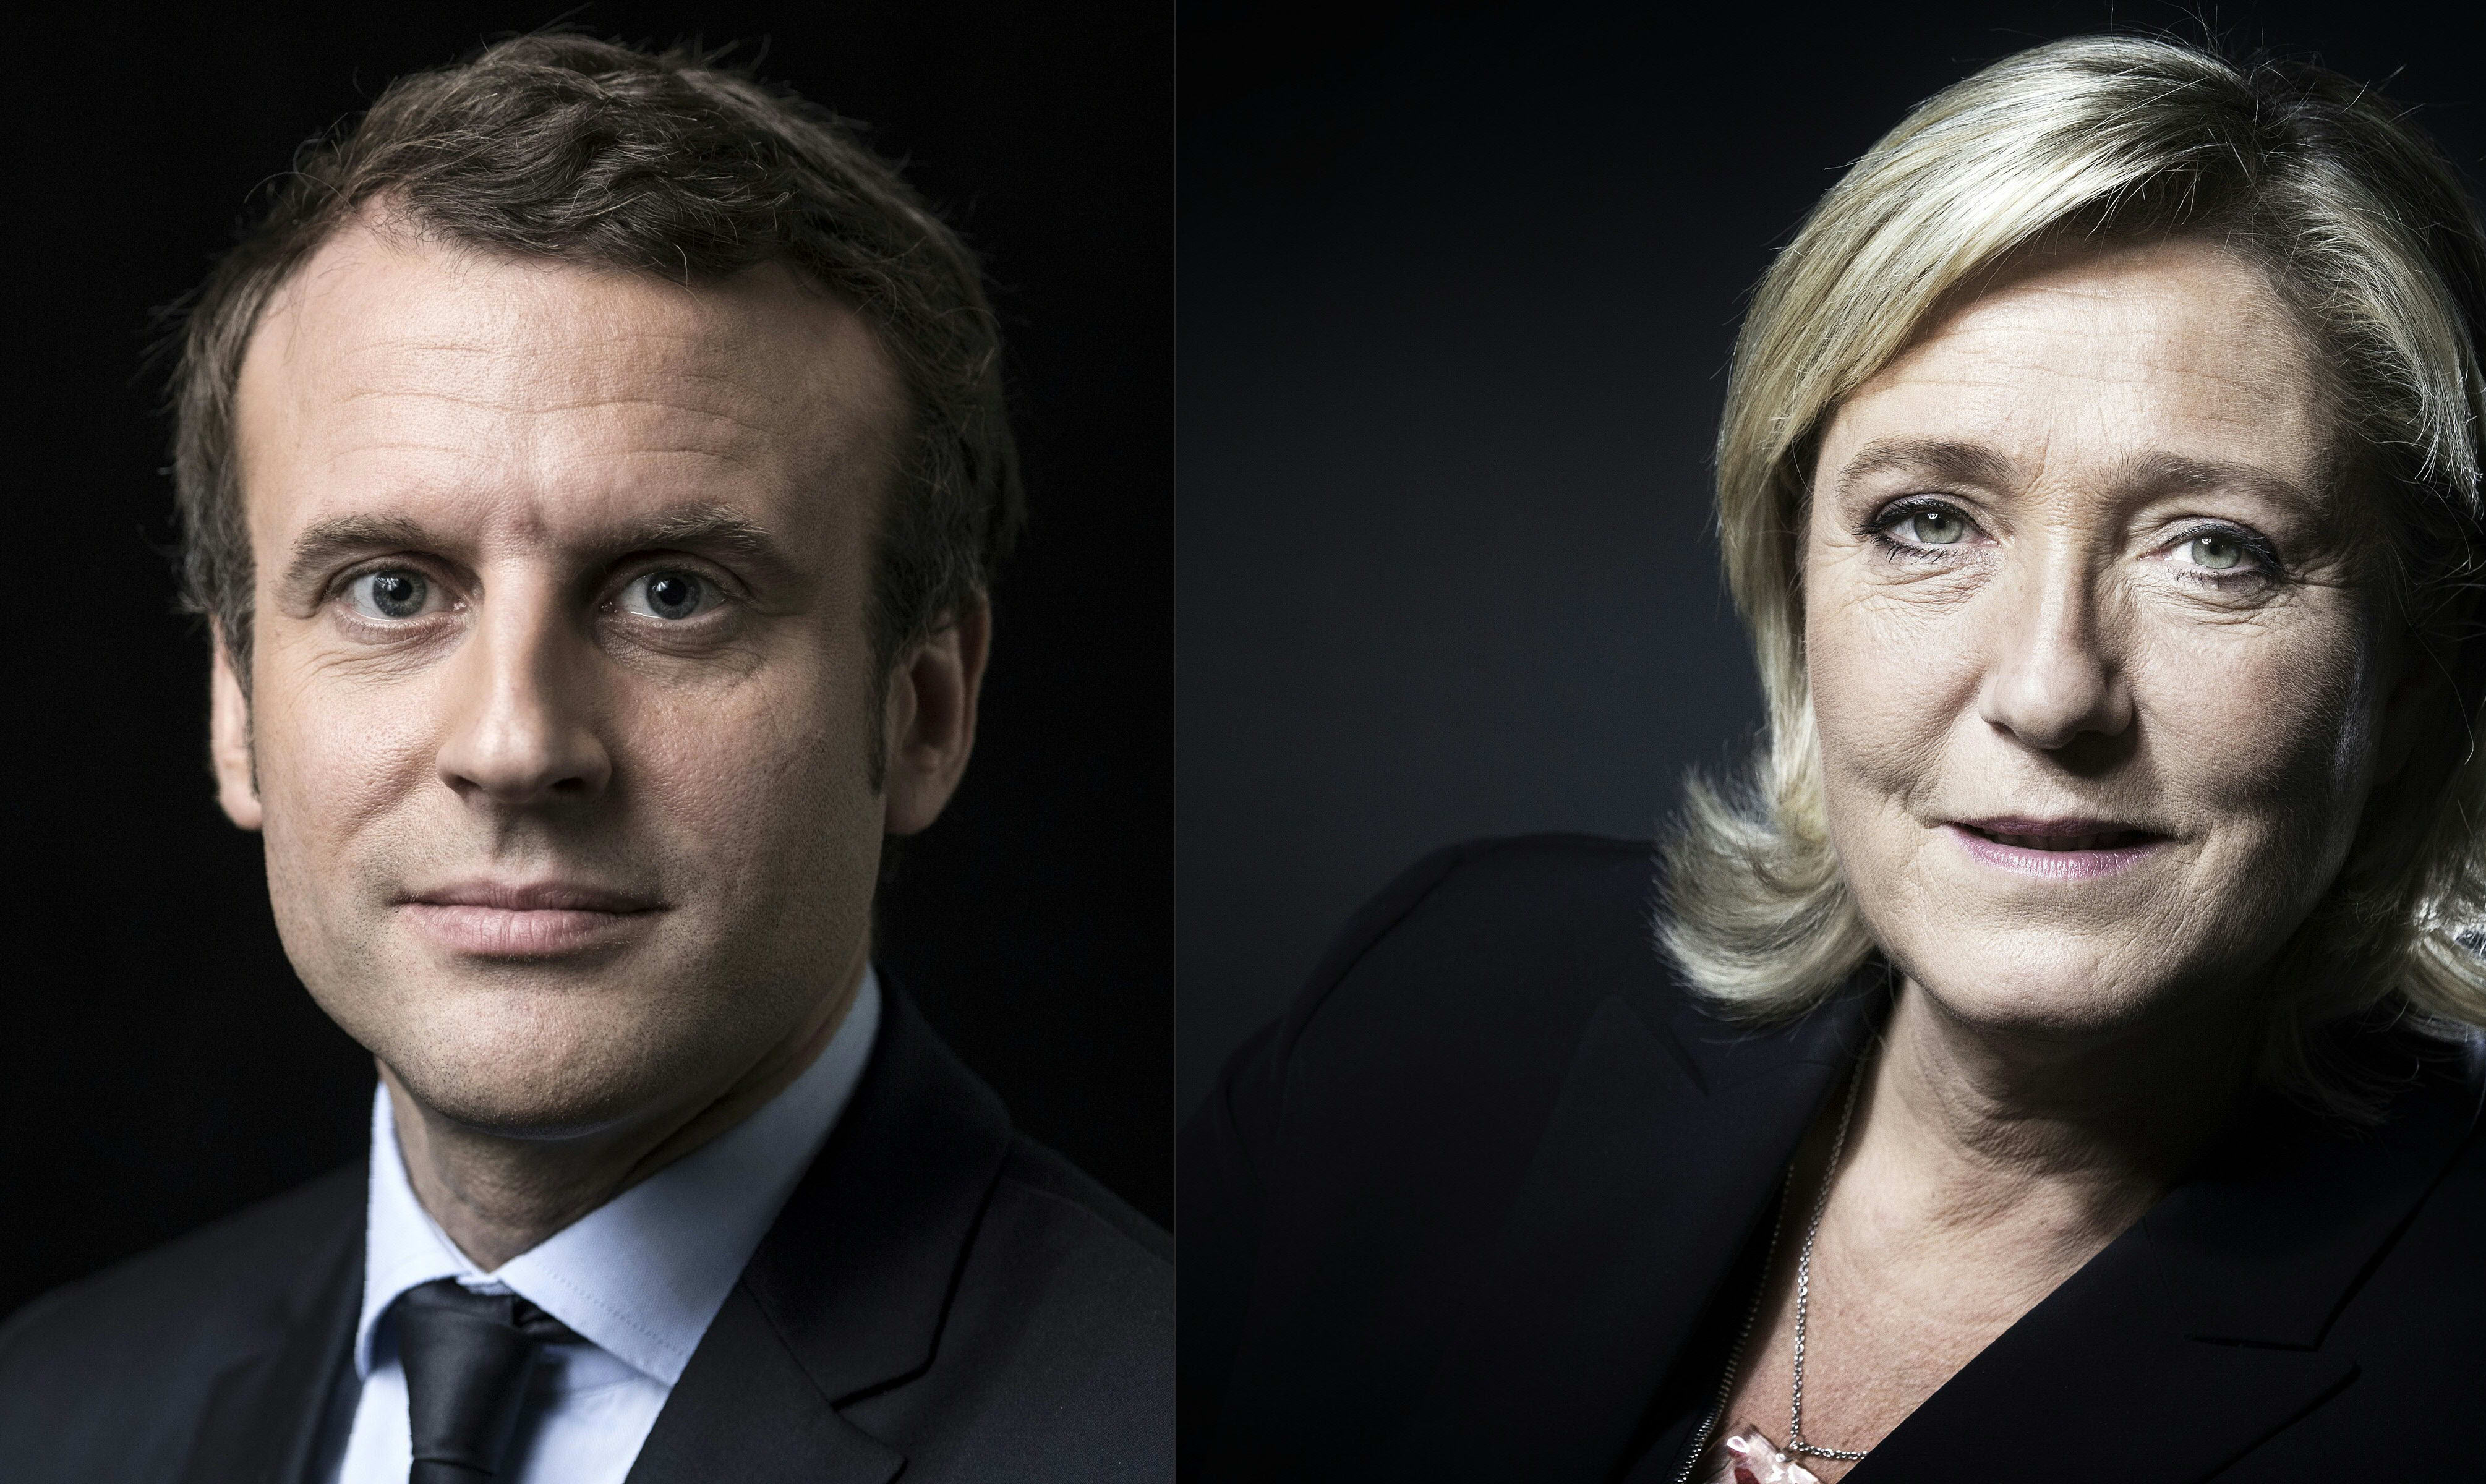 Centrist Emmanuel Macron and Front National leader Marine Le Pen